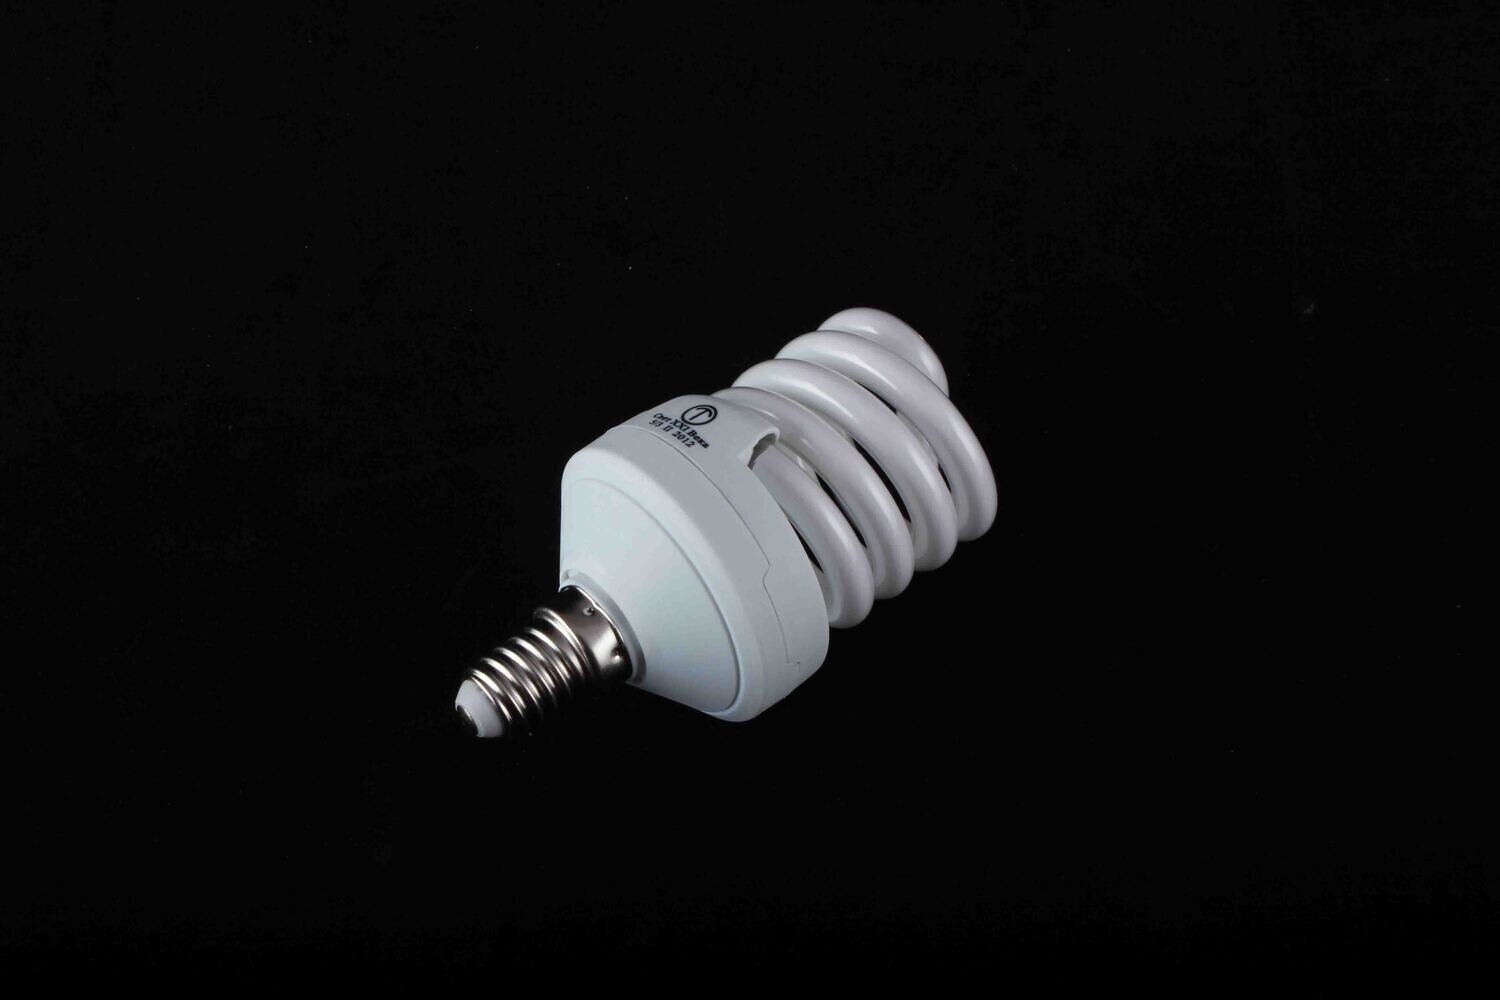 Էլ.լամպ 15W E14 սպիտակ պռուժին KL15-S7 MINI E14/25